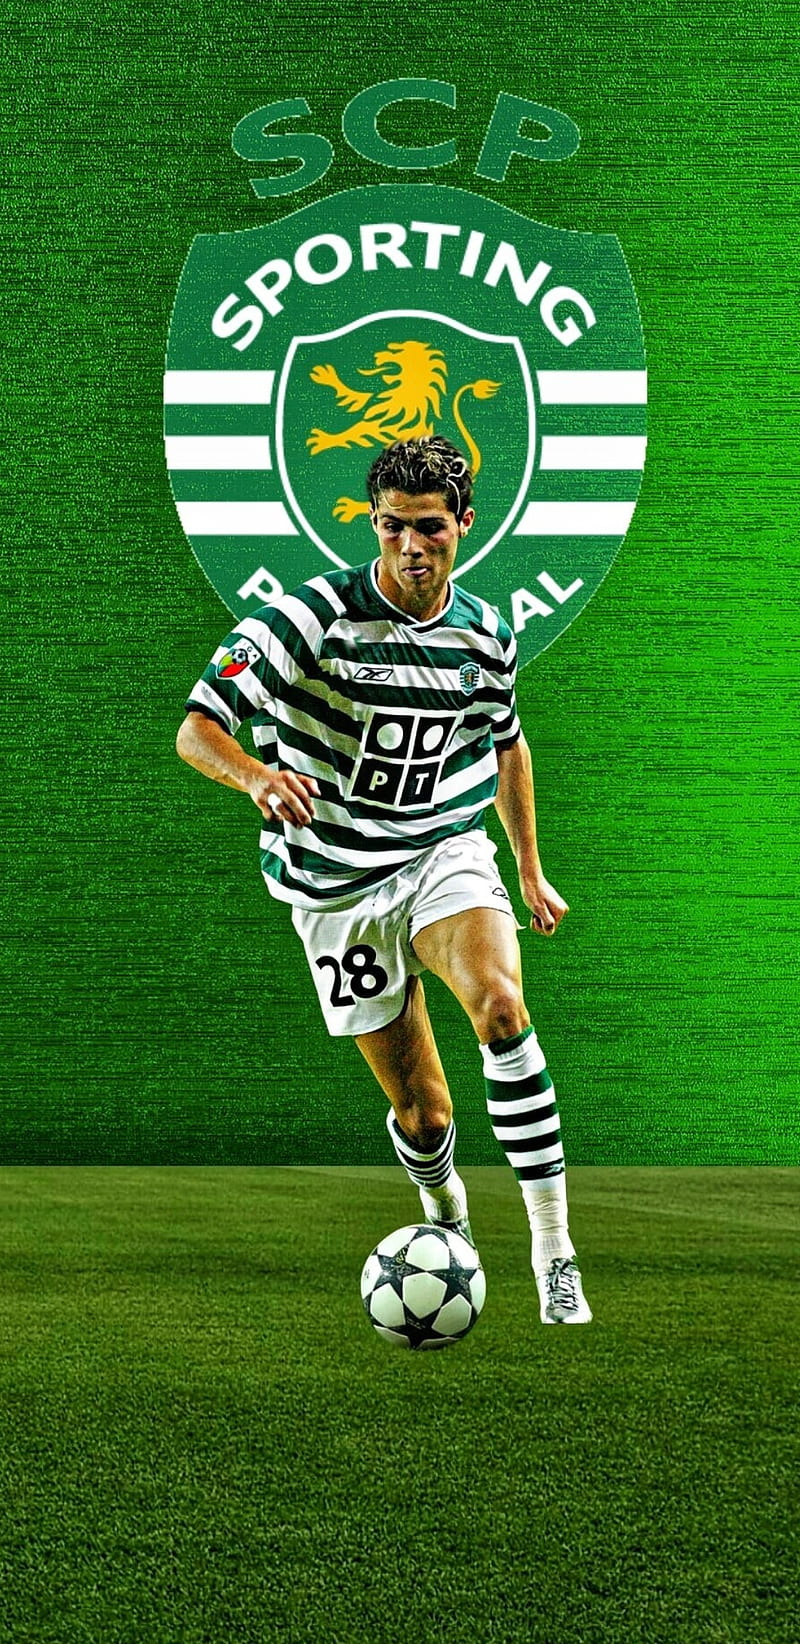 CR7 Sporting là sự kết hợp giữa Cristiano Ronaldo, bóng đá, và quê hương Bồ Đào Nha. Với những hình ảnh nghệ thuật và đậm chất thể thao này, bạn sẽ cảm thấy kích thích và có thêm động lực trong cuộc sống. Thưởng thức những hình ảnh tuyệt đẹp này và khám phá thế giới đầy màu sắc của CR7 Sporting.